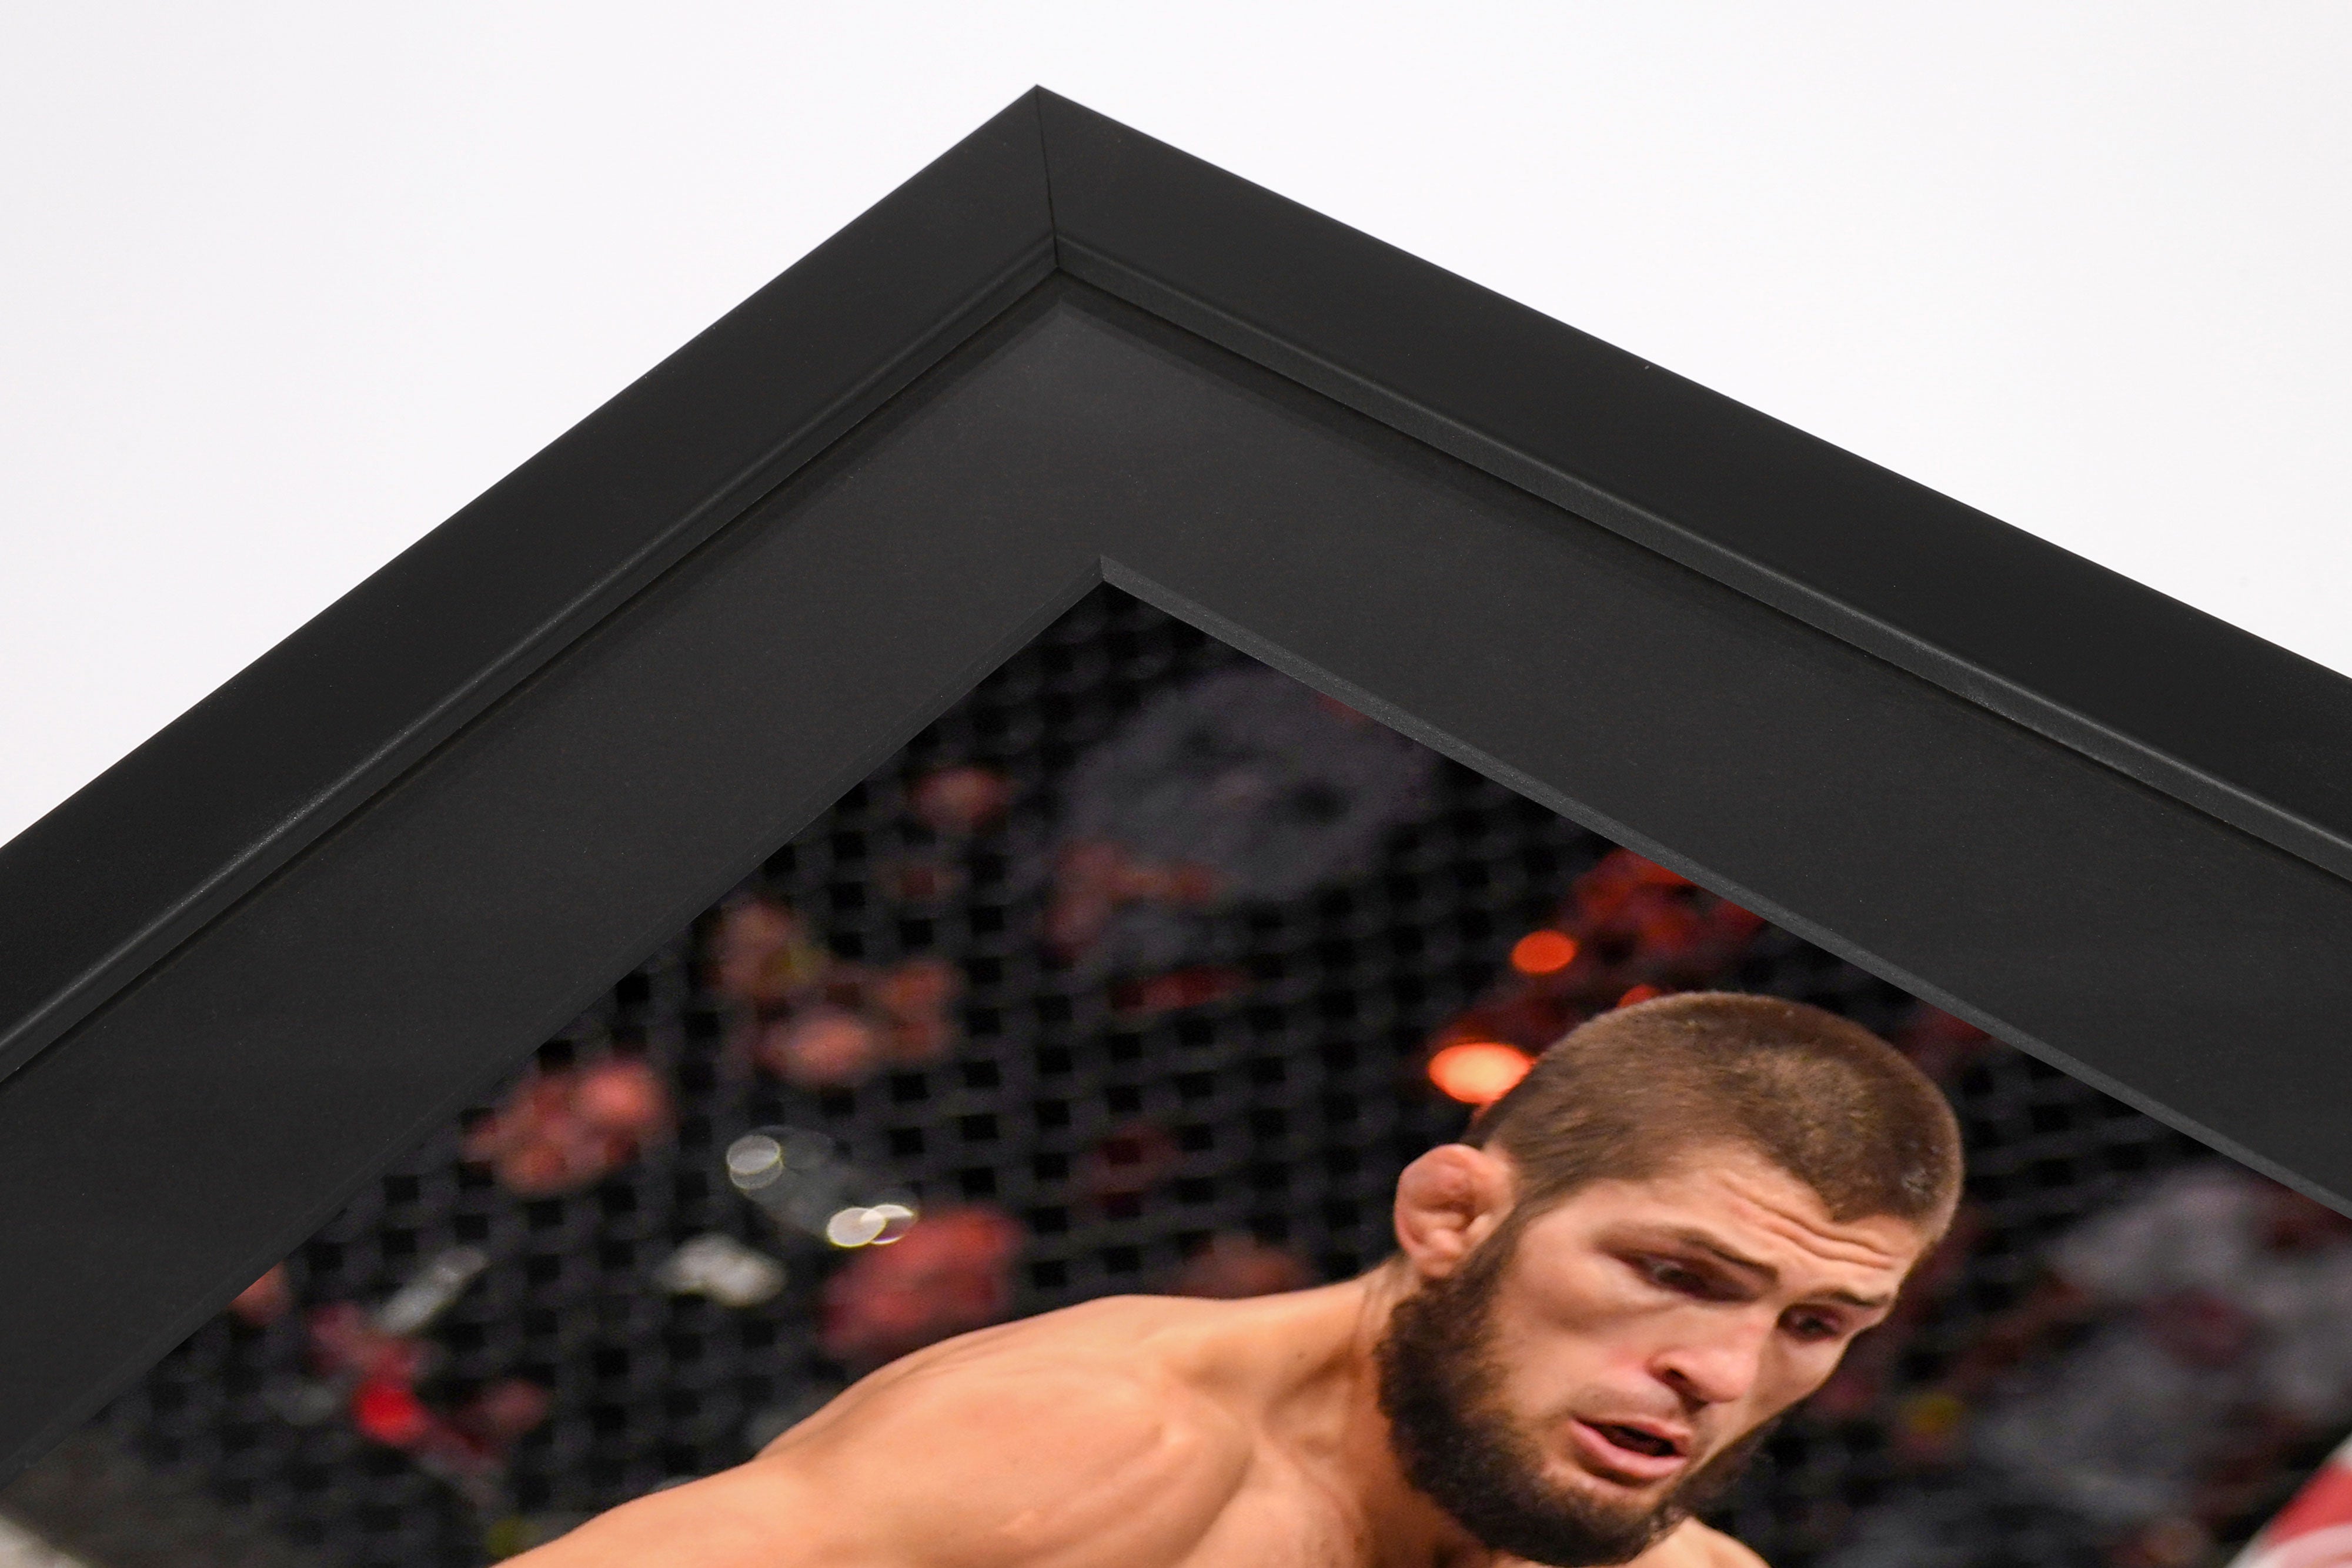 Khabib Framed Photo - UFC 254: Khabib vs Gaethje